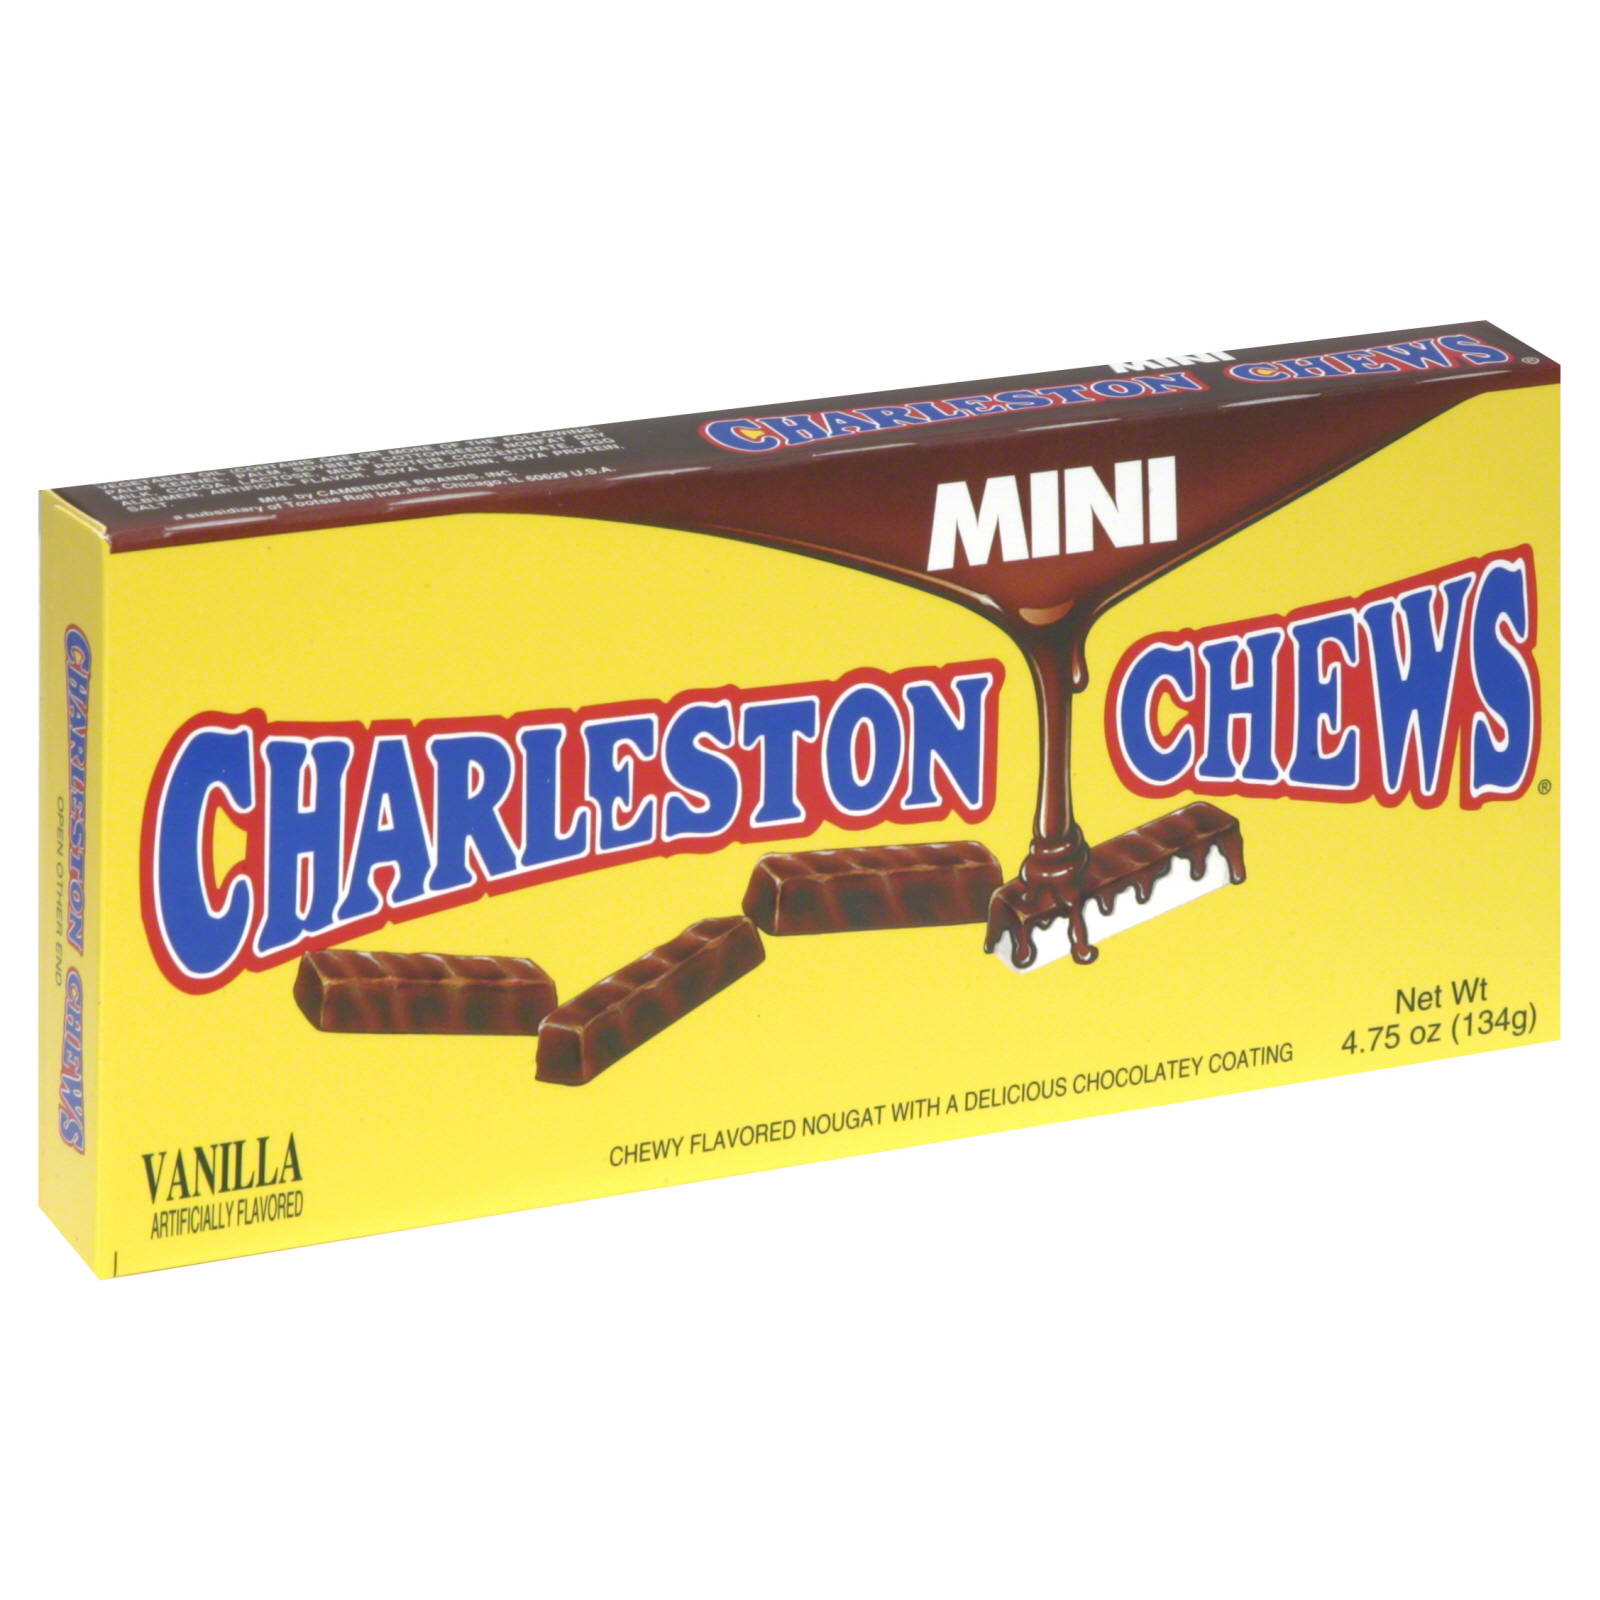 Charleston Chew Chewy Flavored Nougat, Chocolatey Coating, Mini, Vanilla, 4.75 oz (134 g)